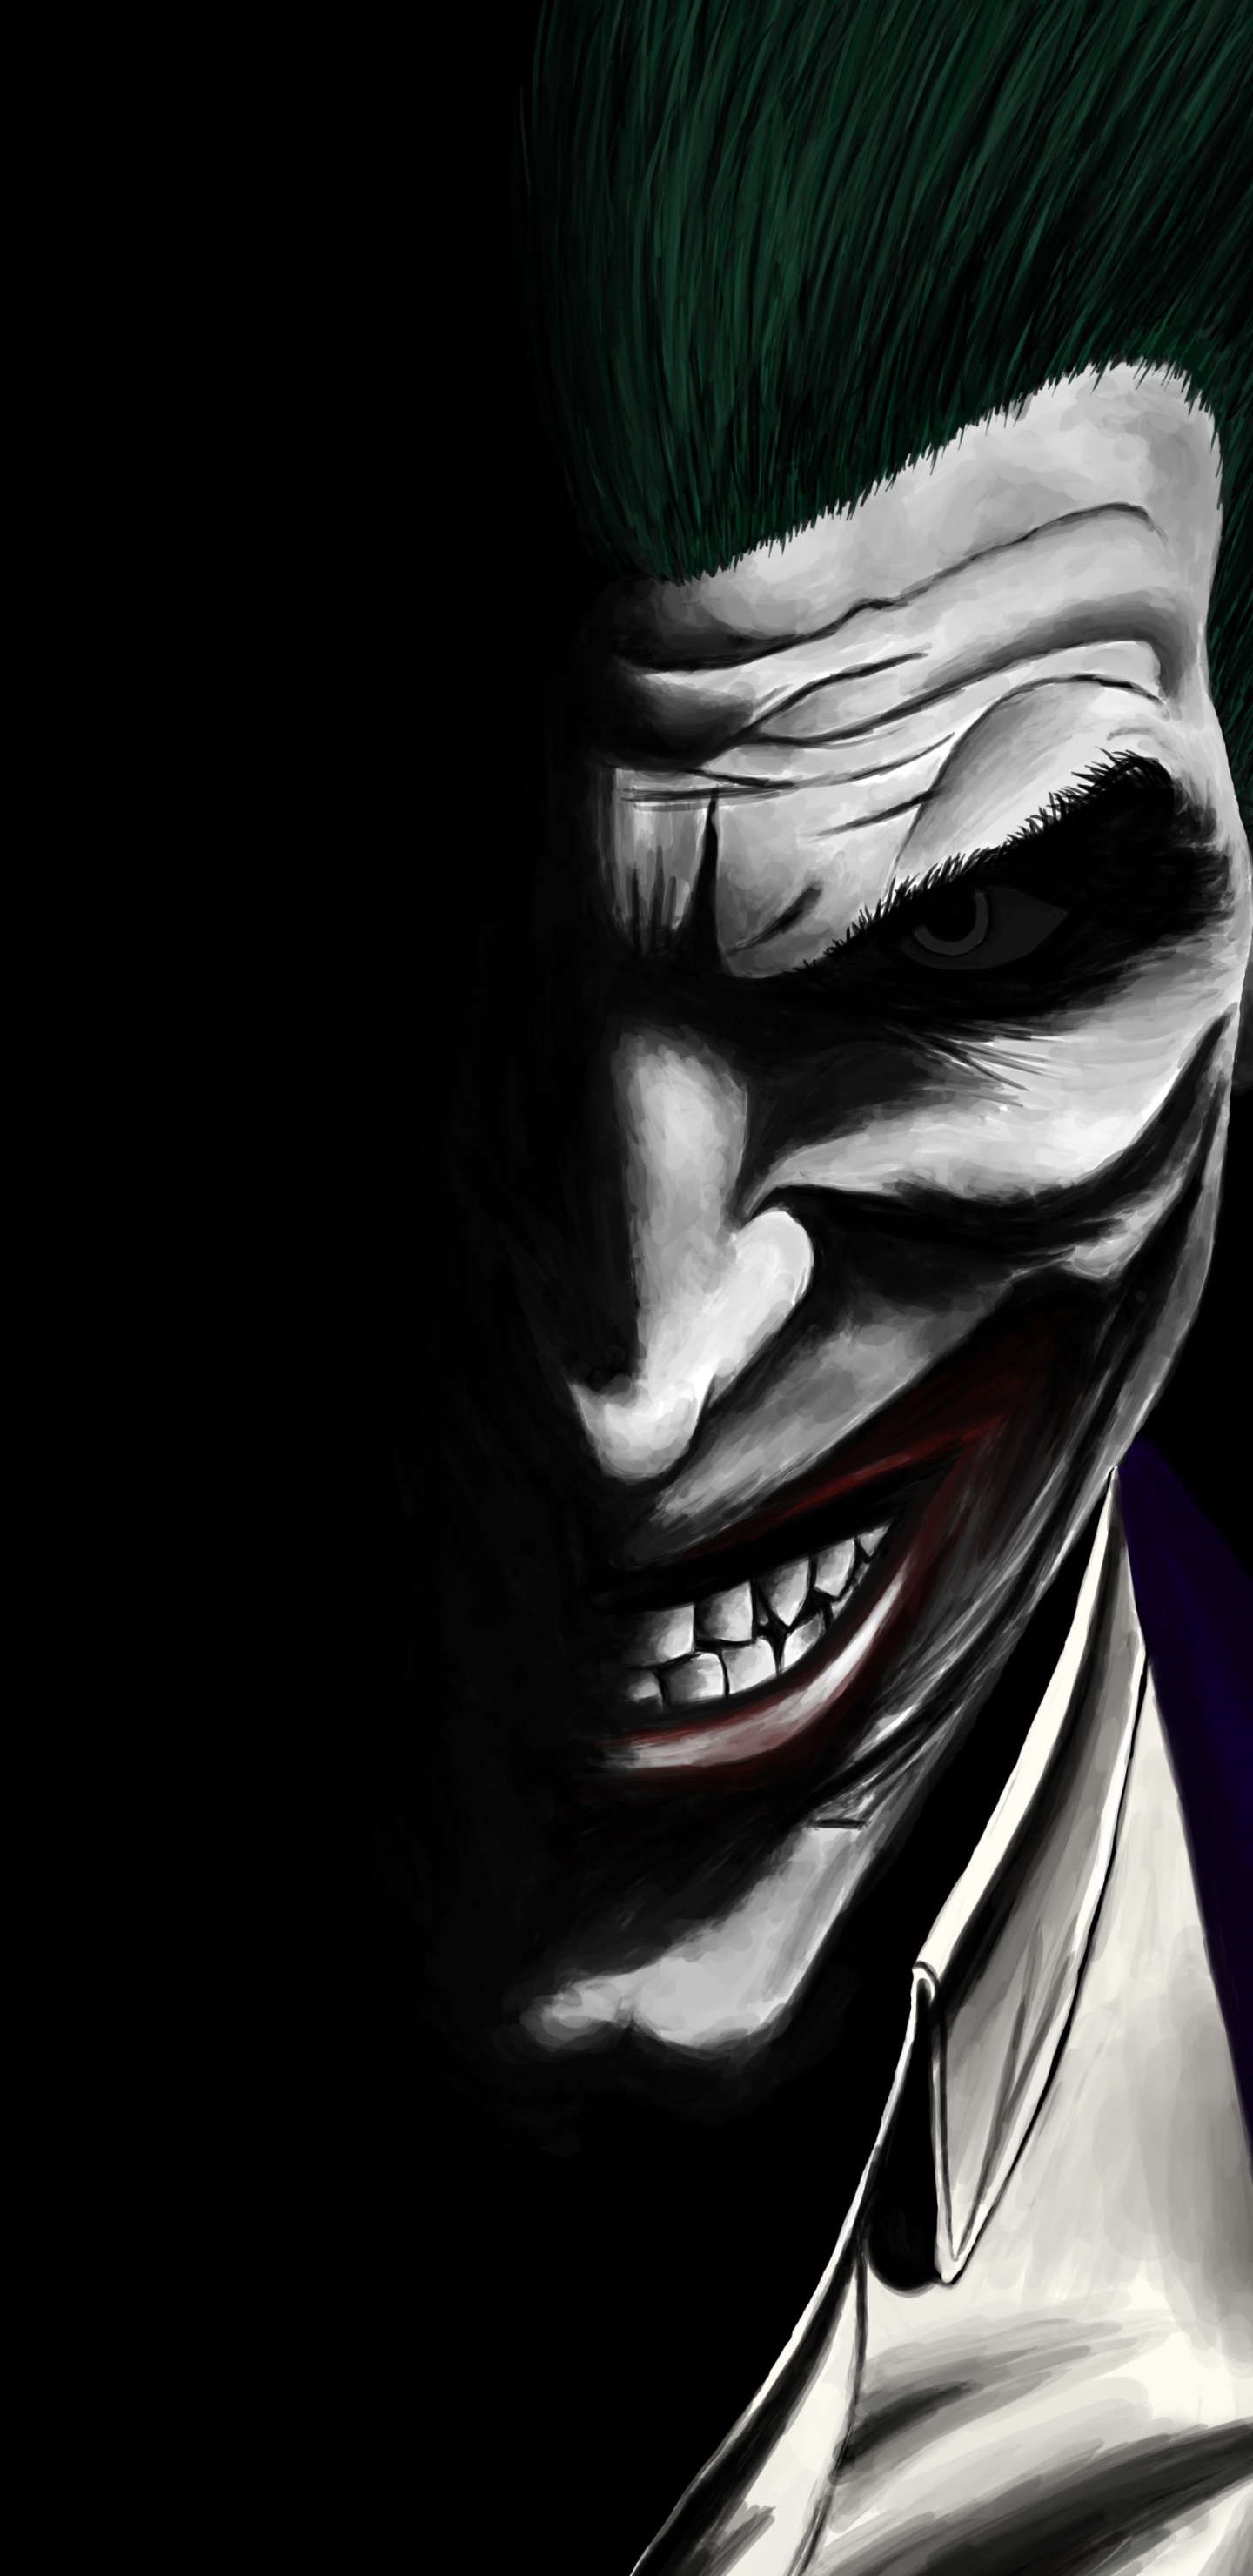 Joker, Dark, Dc Comics, Villain, Artwork, Wallpaper - Joker Wallpaper For Iphone X - HD Wallpaper 